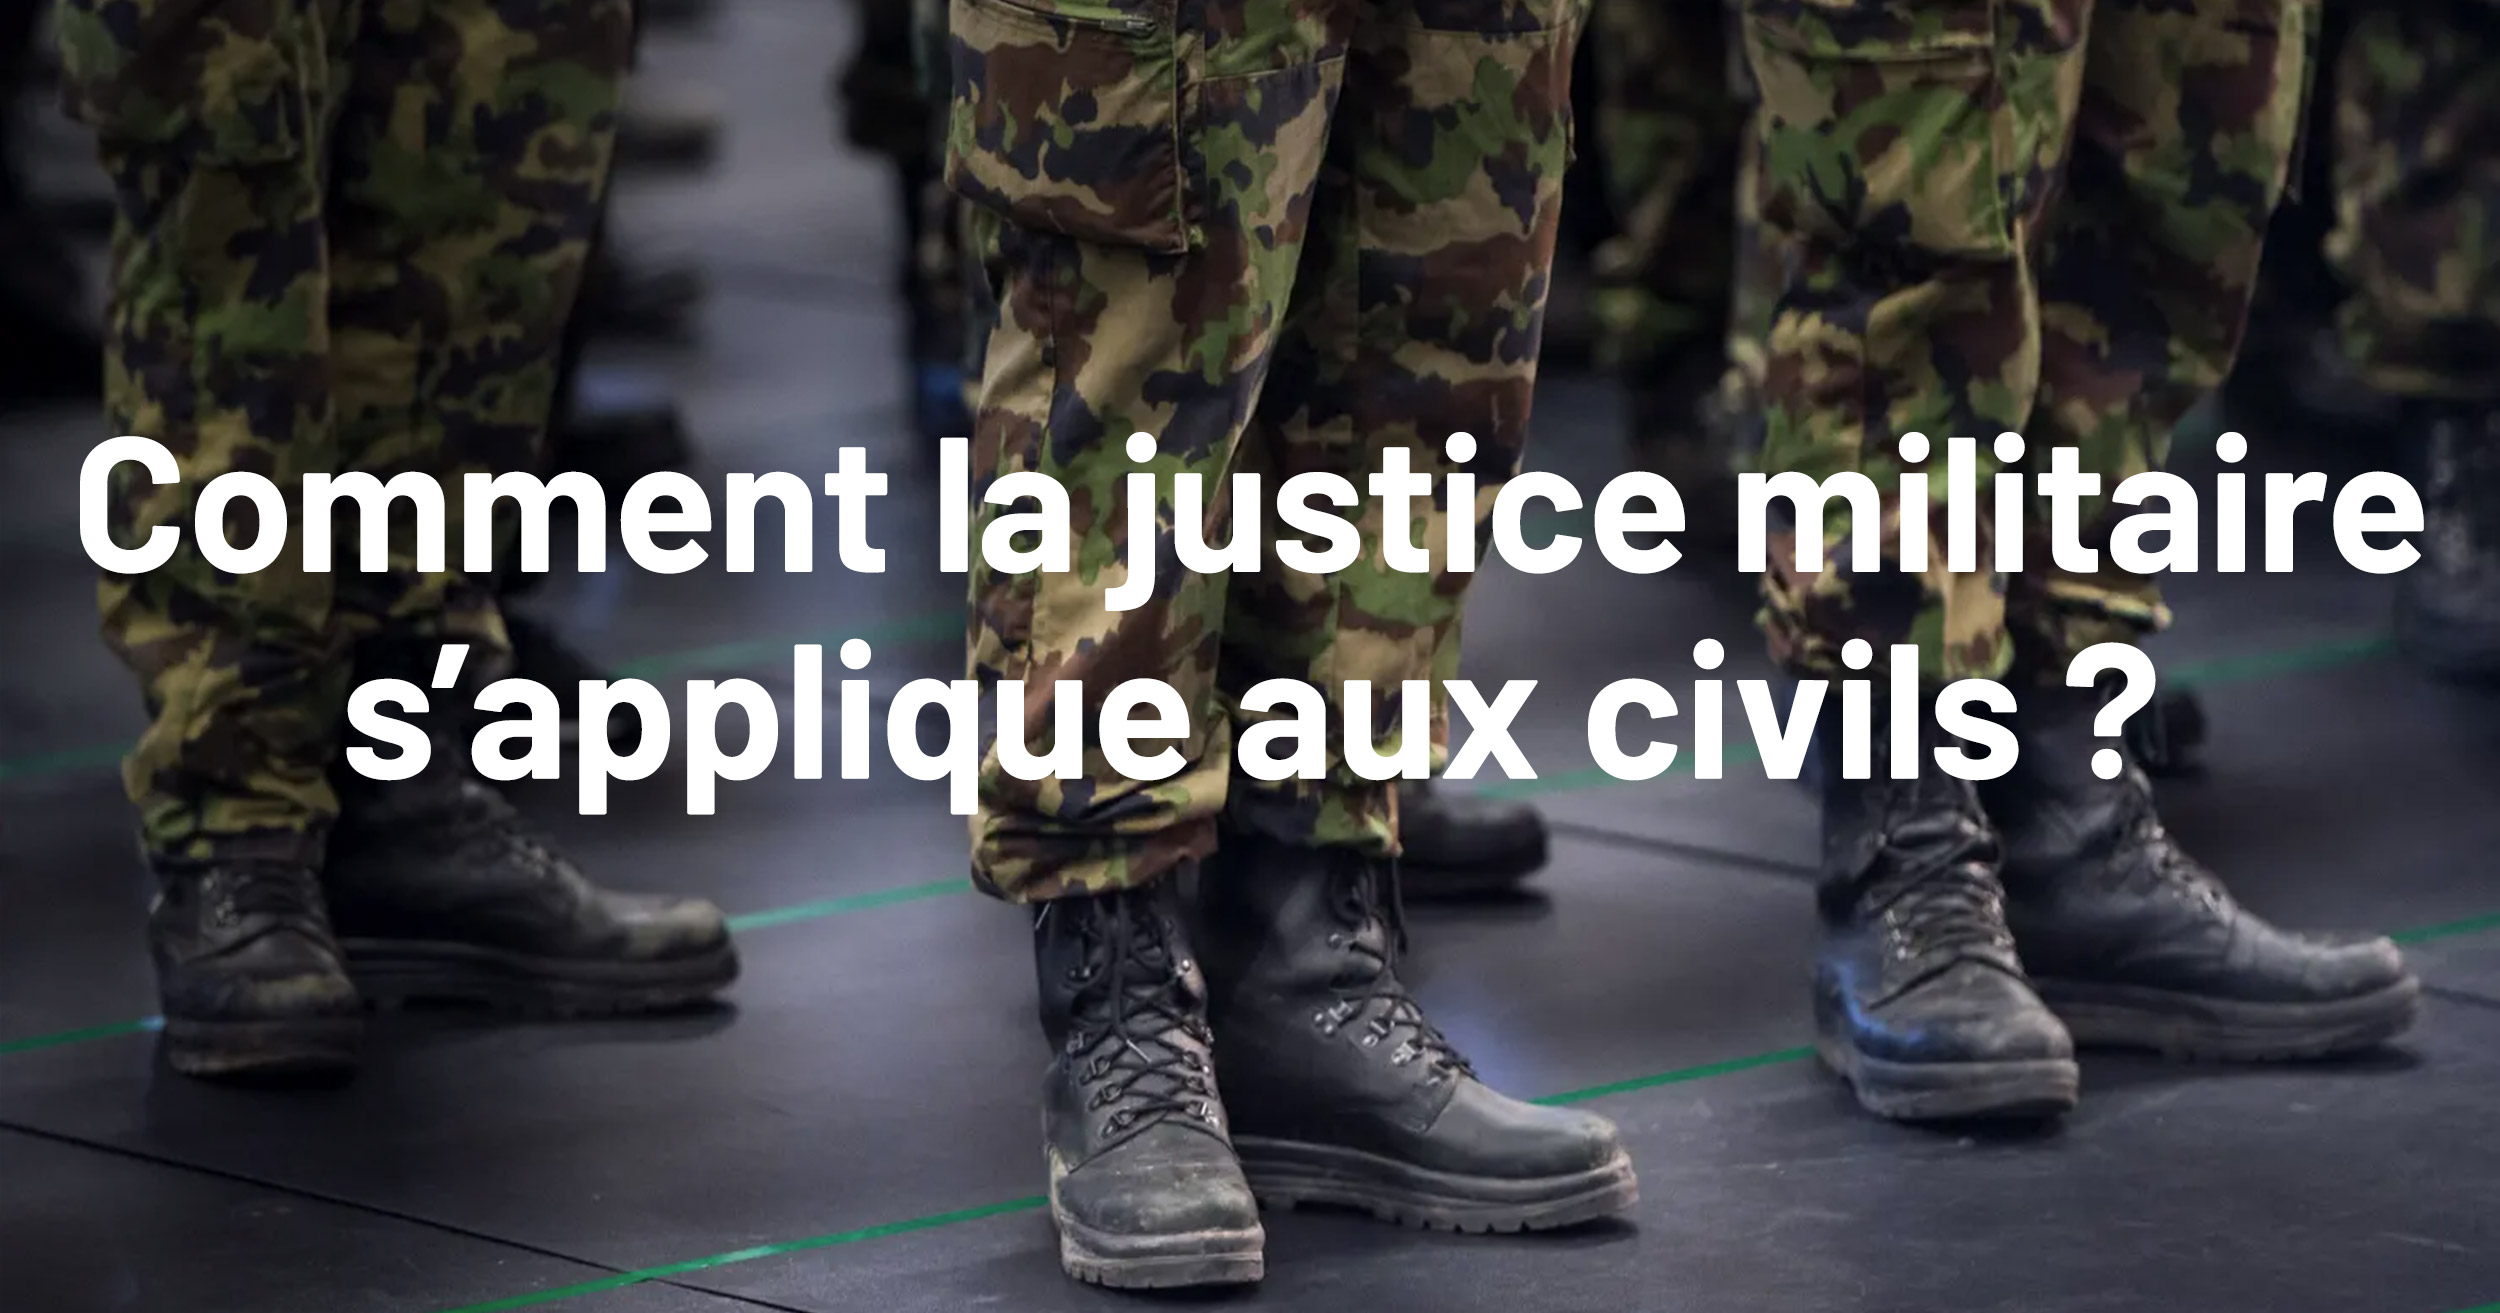 Comment la justice militaire s'applique aux civils?